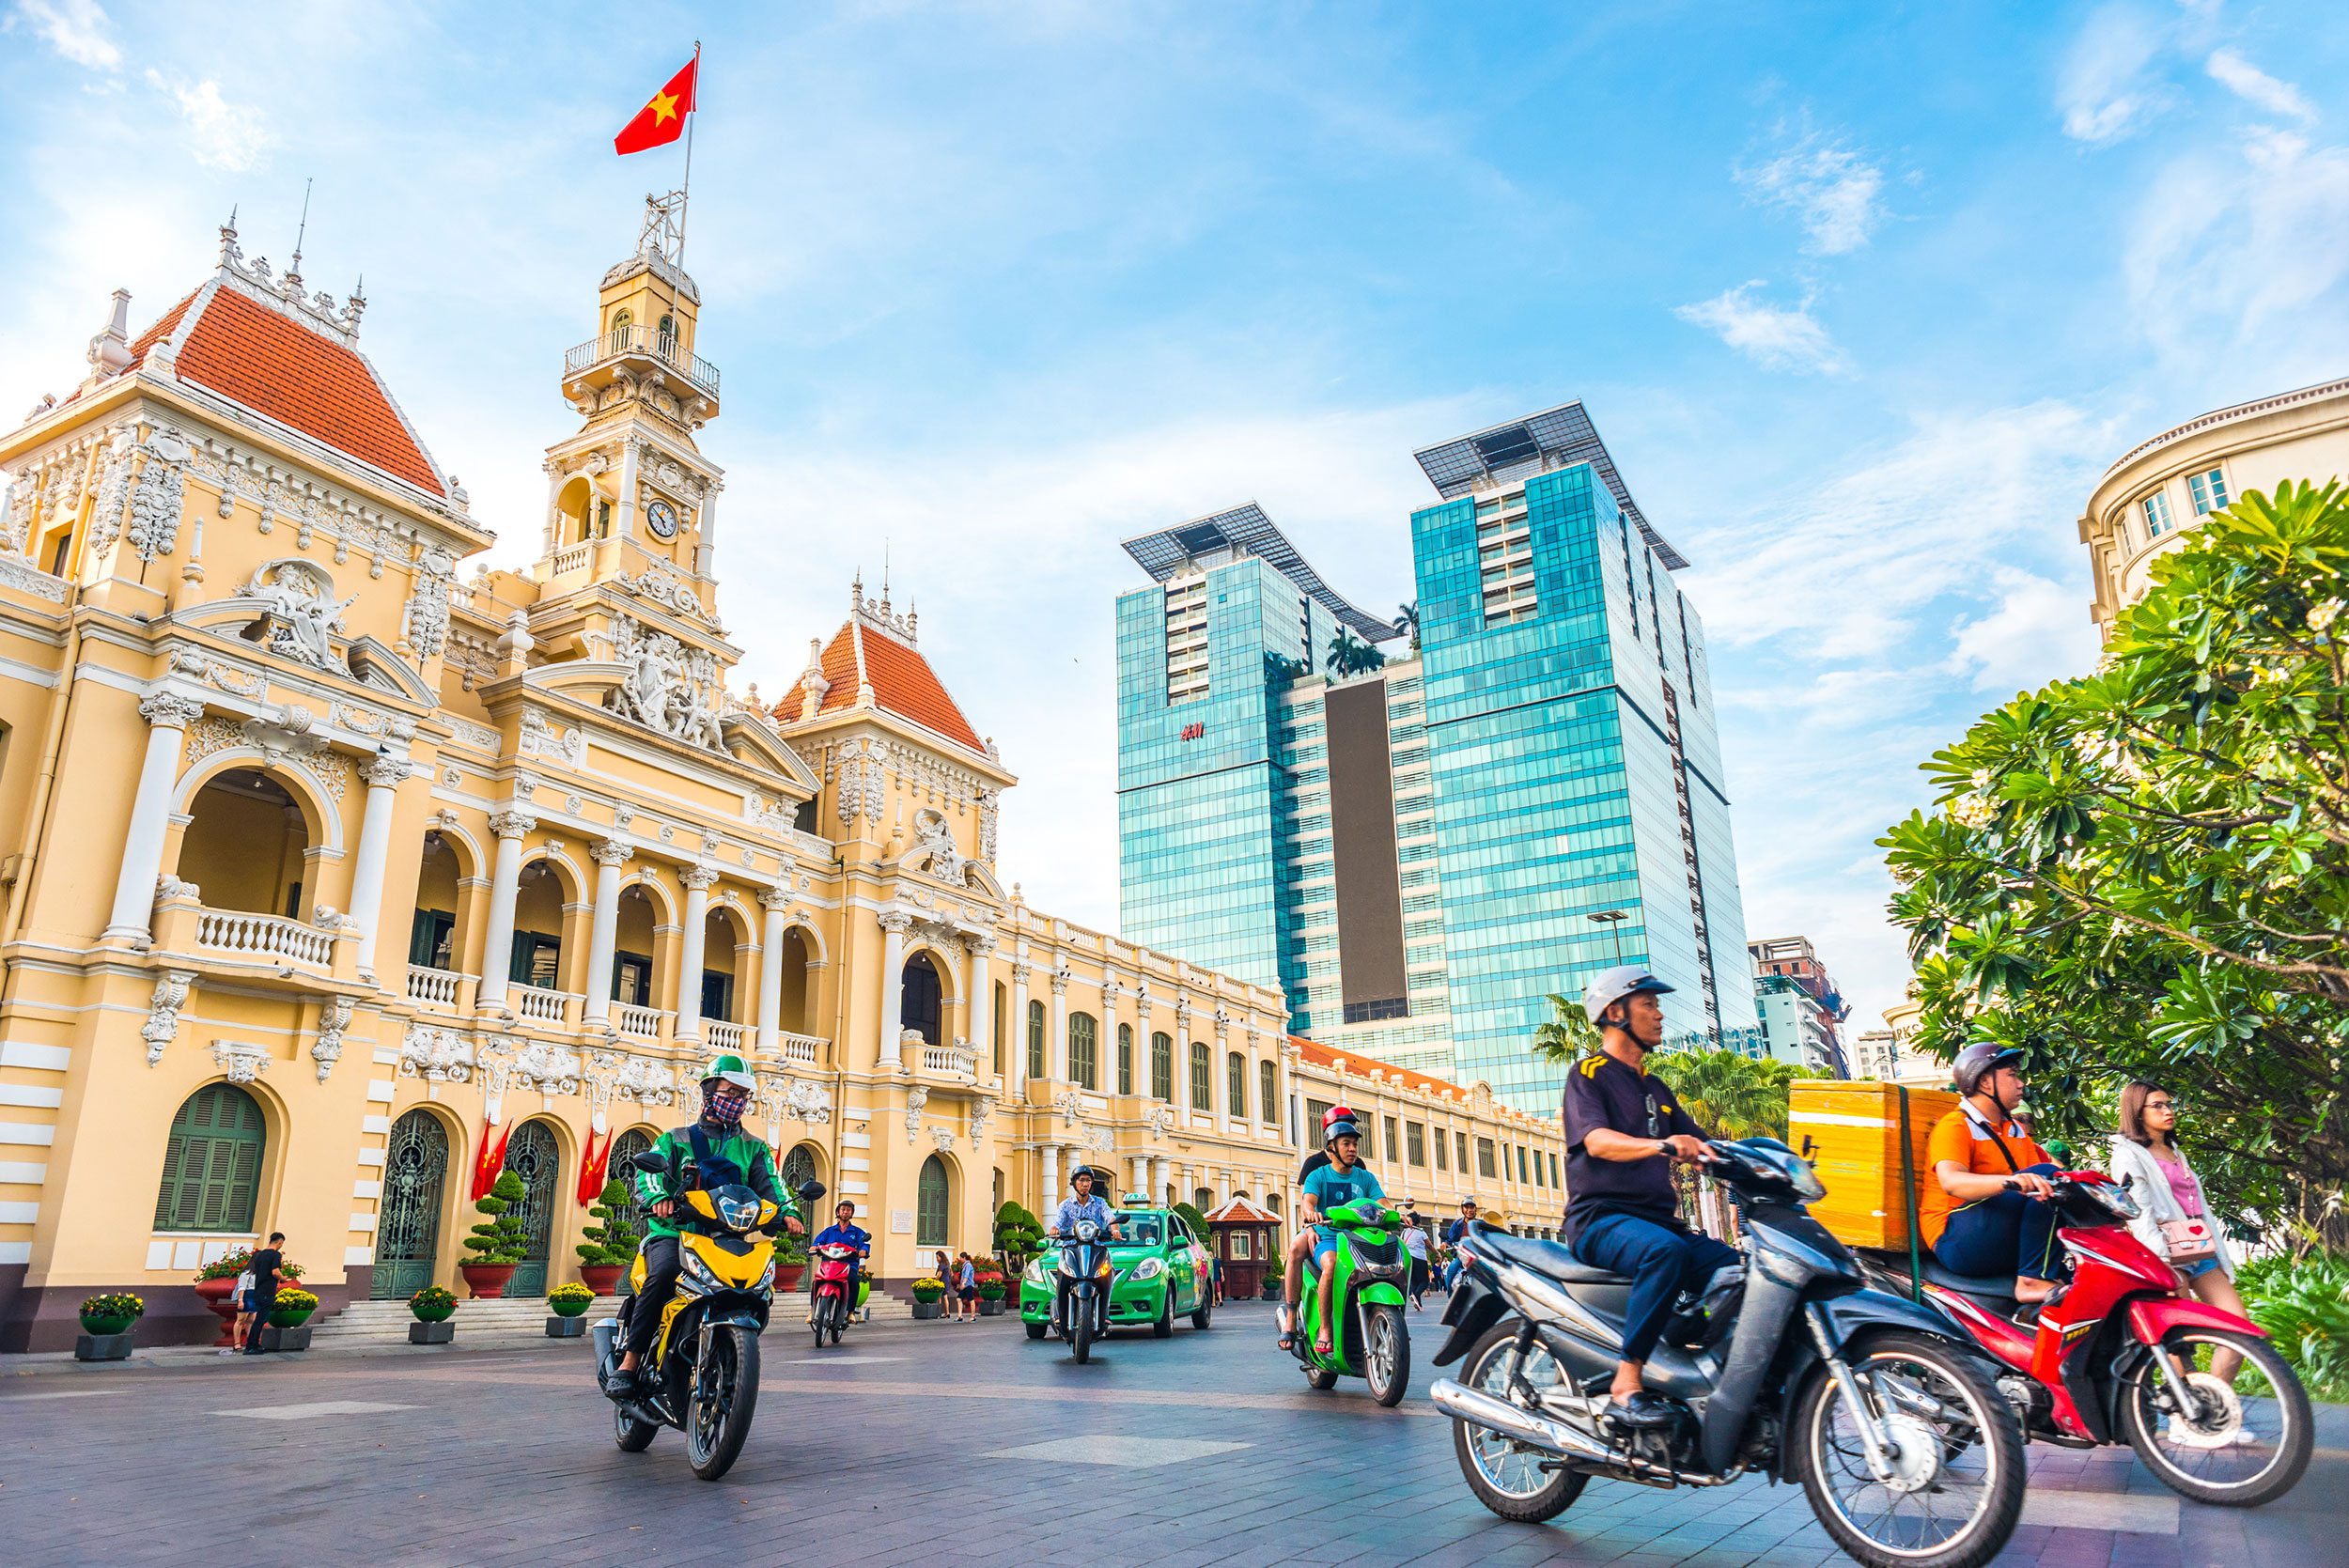 Chào mừng đến với Thành phố Hồ Chí Minh! - Du lịch Thành phố Hồ Chí Minh -  Sống động từng trải nghiệm!